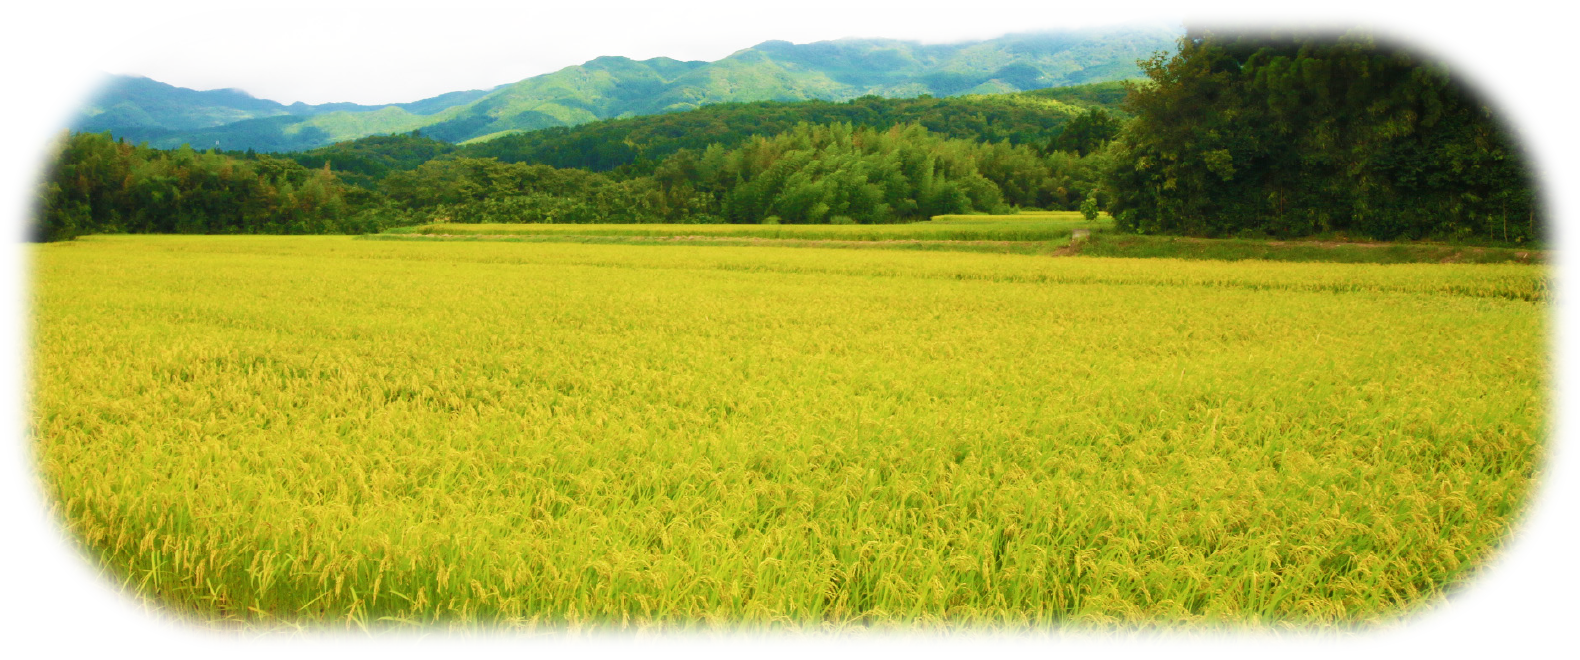 契約農家から仕入れた新潟コシヒカリを使用しているので、とっても美味しいお米です